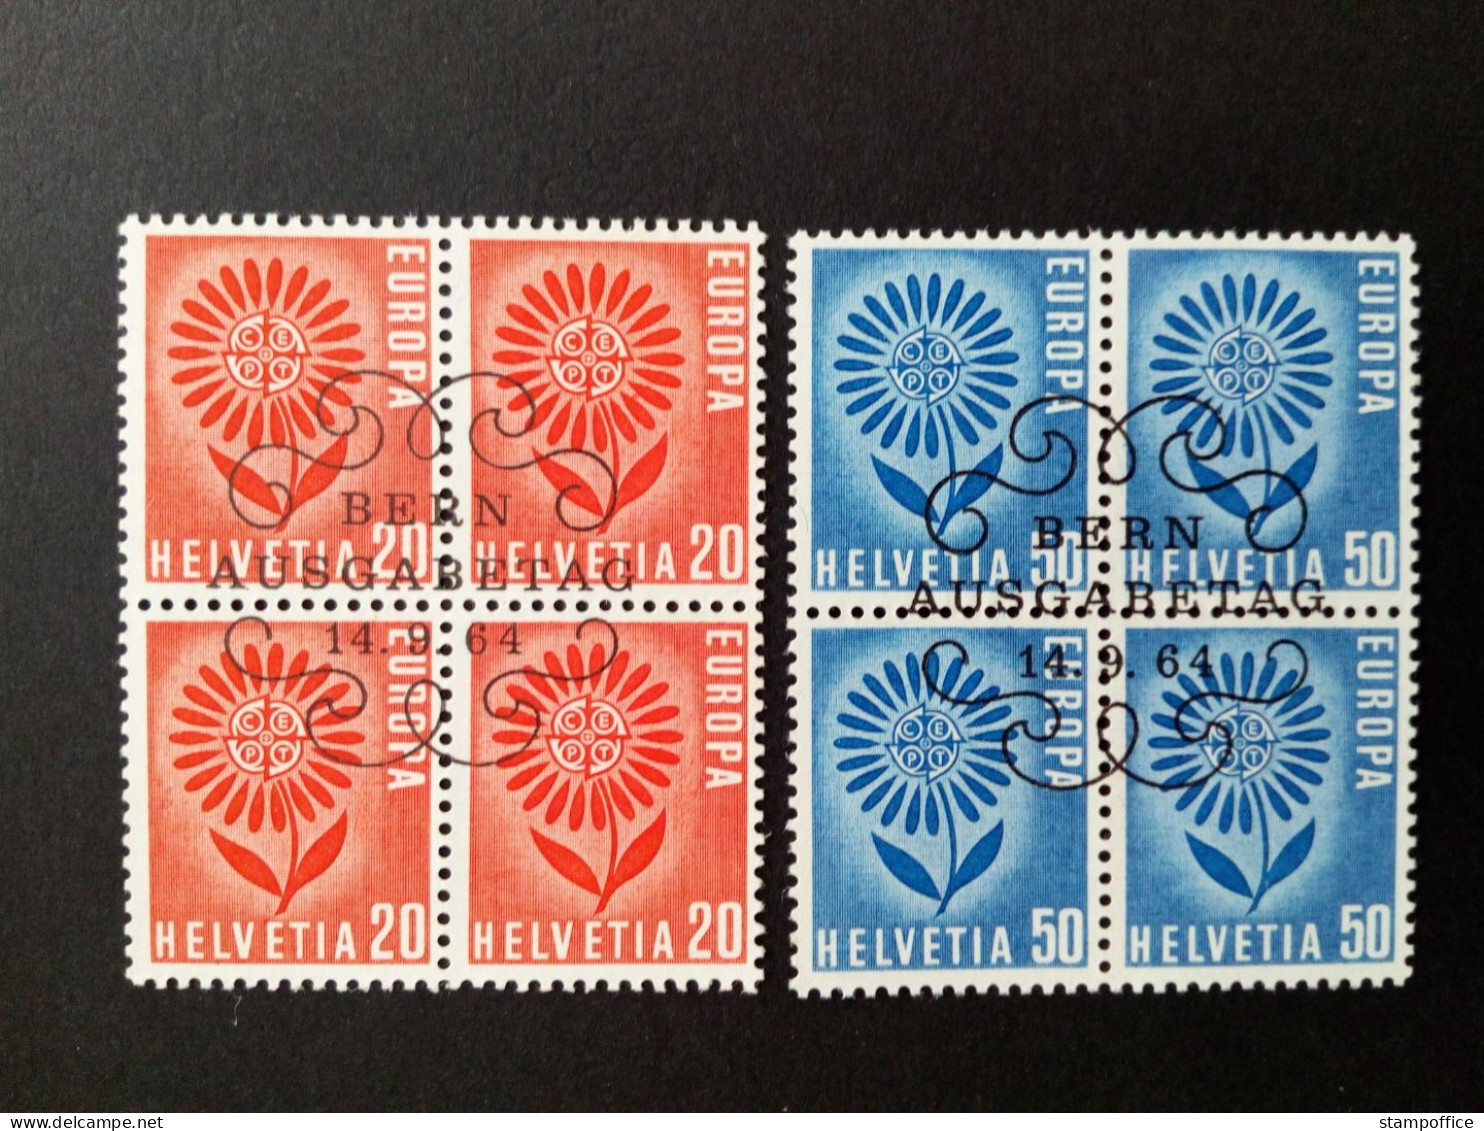 SCHWEIZ MI-NR. 800-801 GESTEMPELT(USED) 4er BLOCK EUROPA 1964 STILISIERTE BLUME - 1964